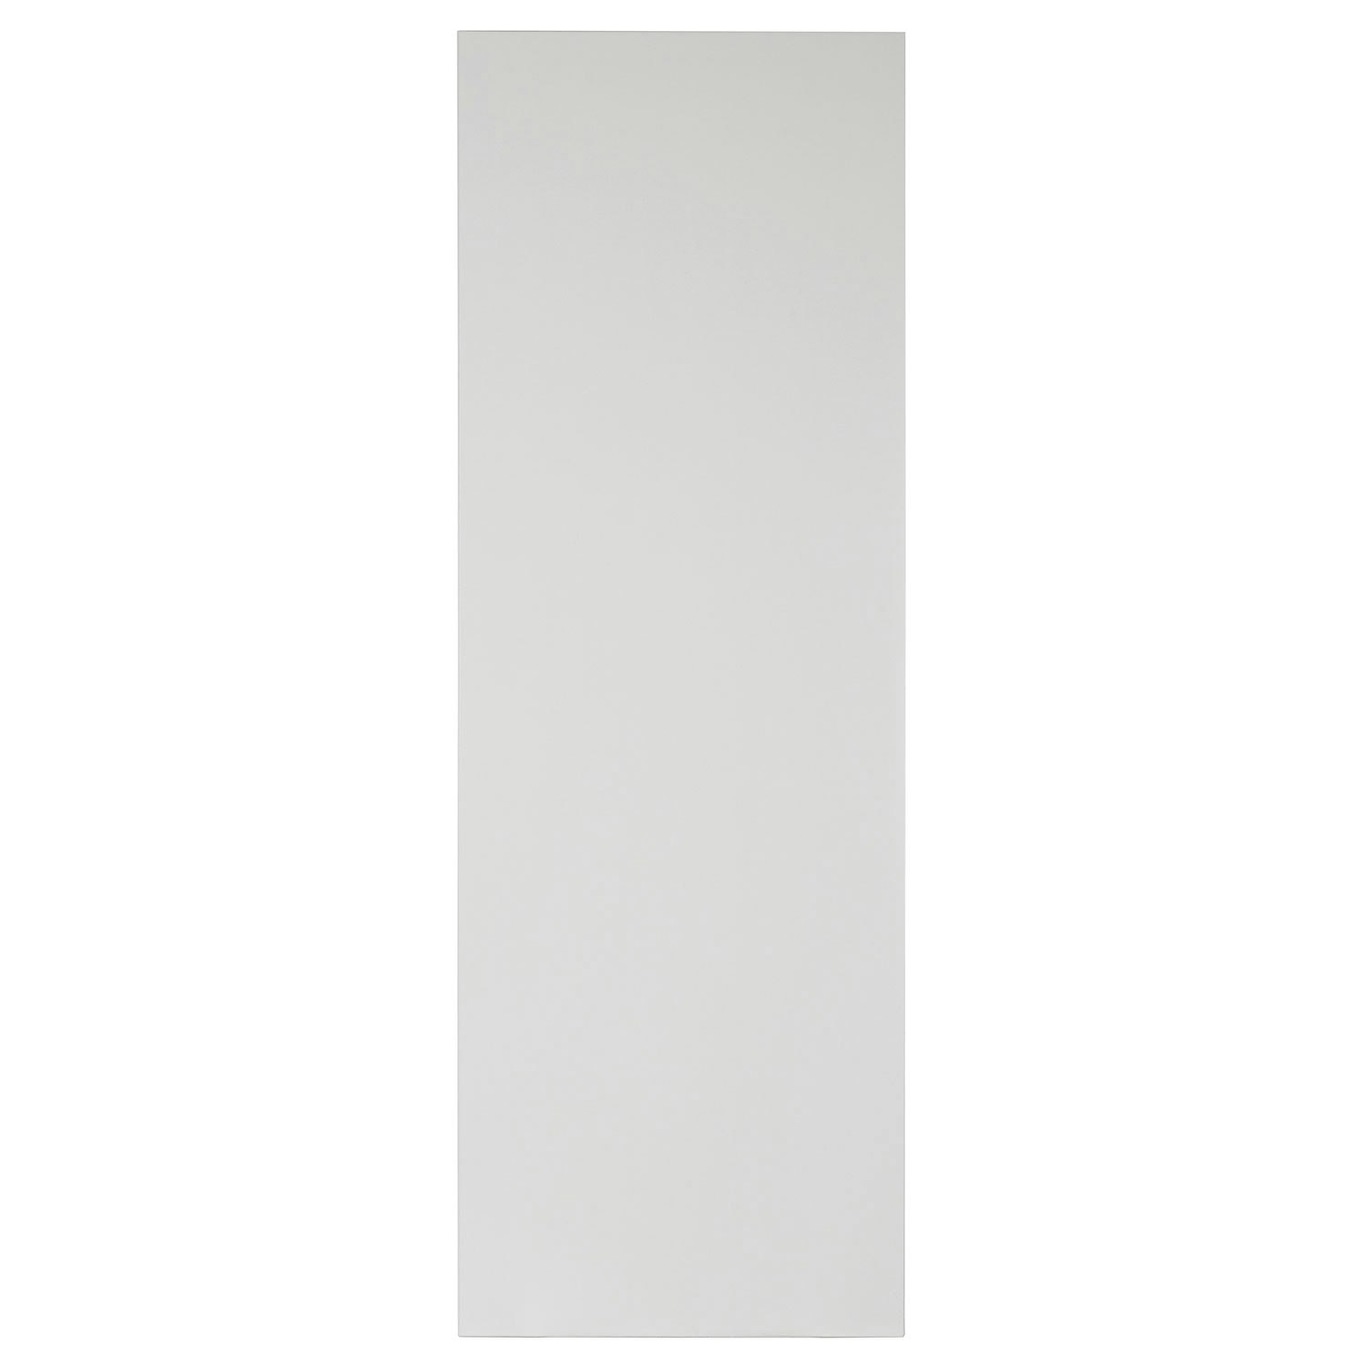 Pythagoras Shelf Large, White